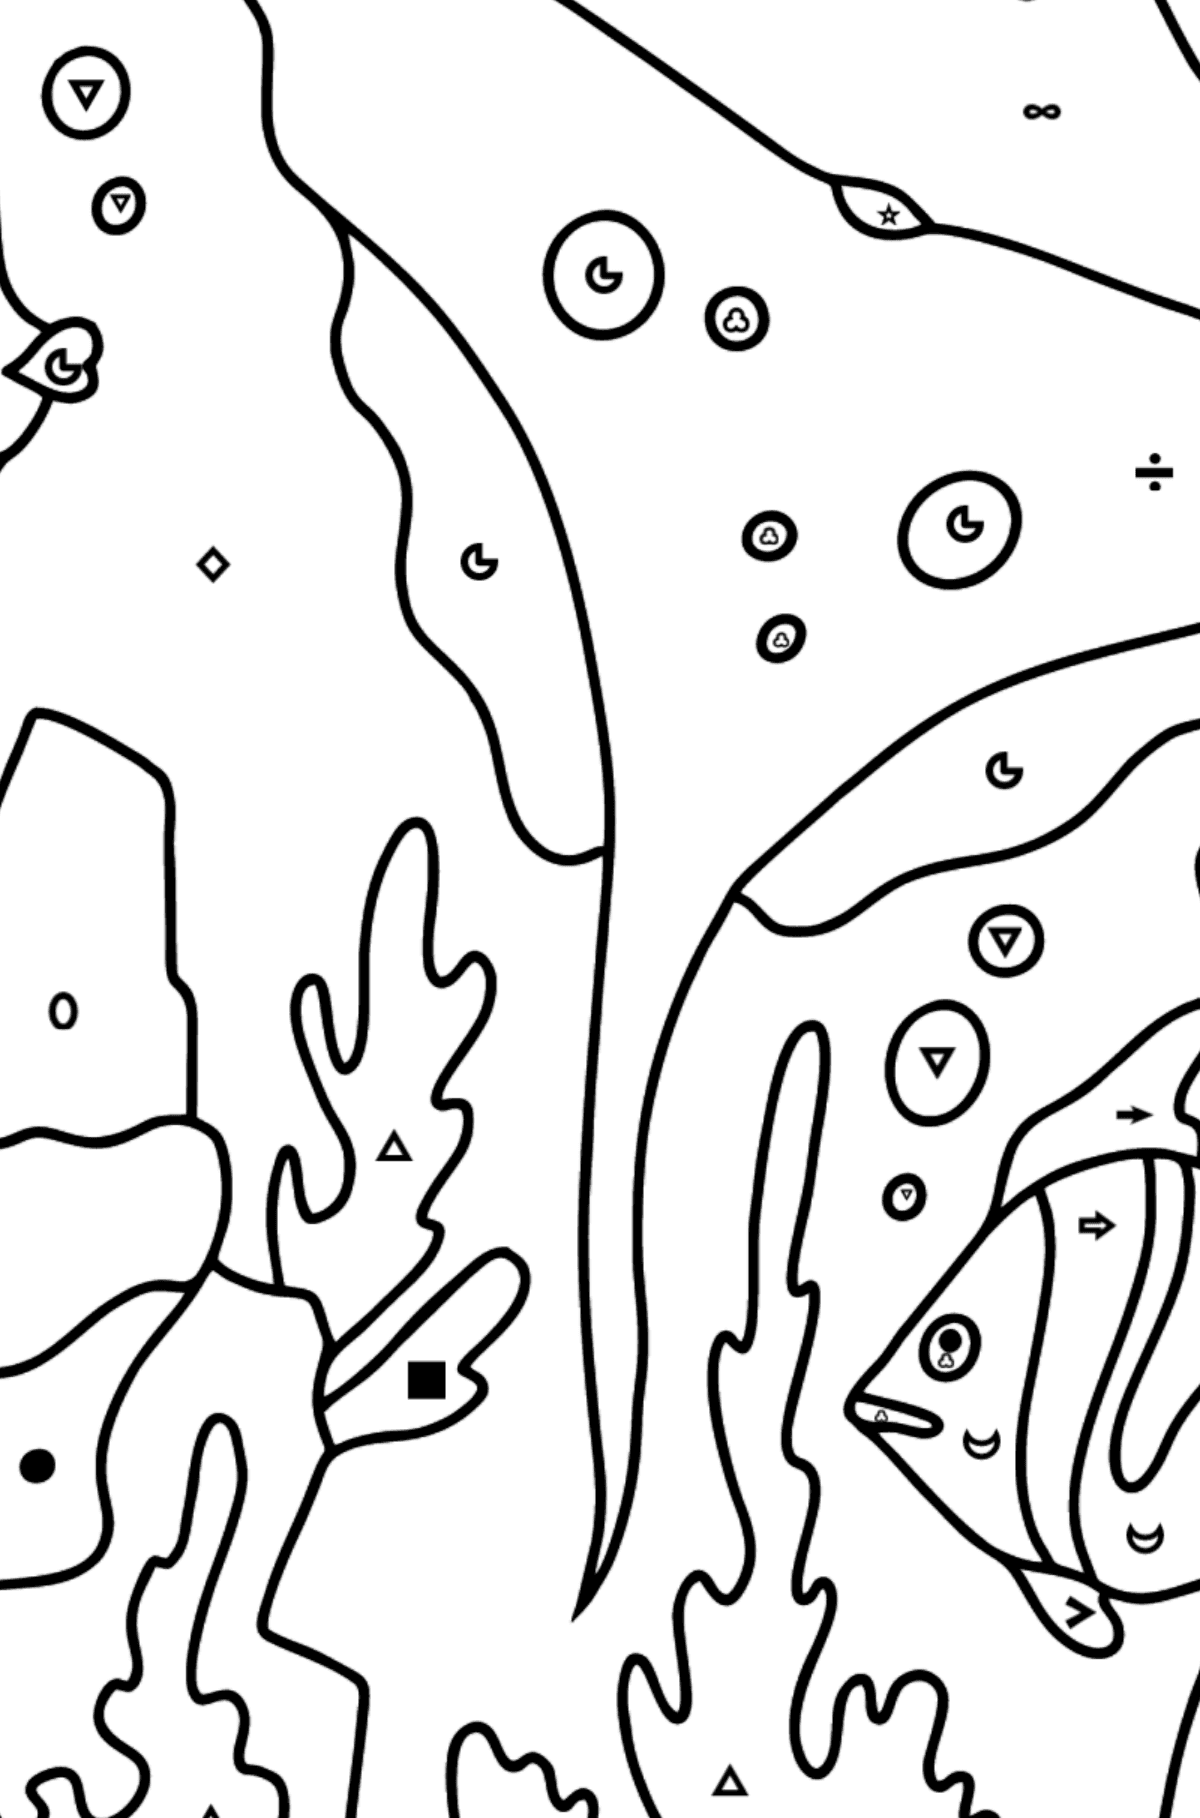 Tegning til fargelegging fisk og en rokke (vanskelig) - Fargelegge etter symboler og geometriske former for barn